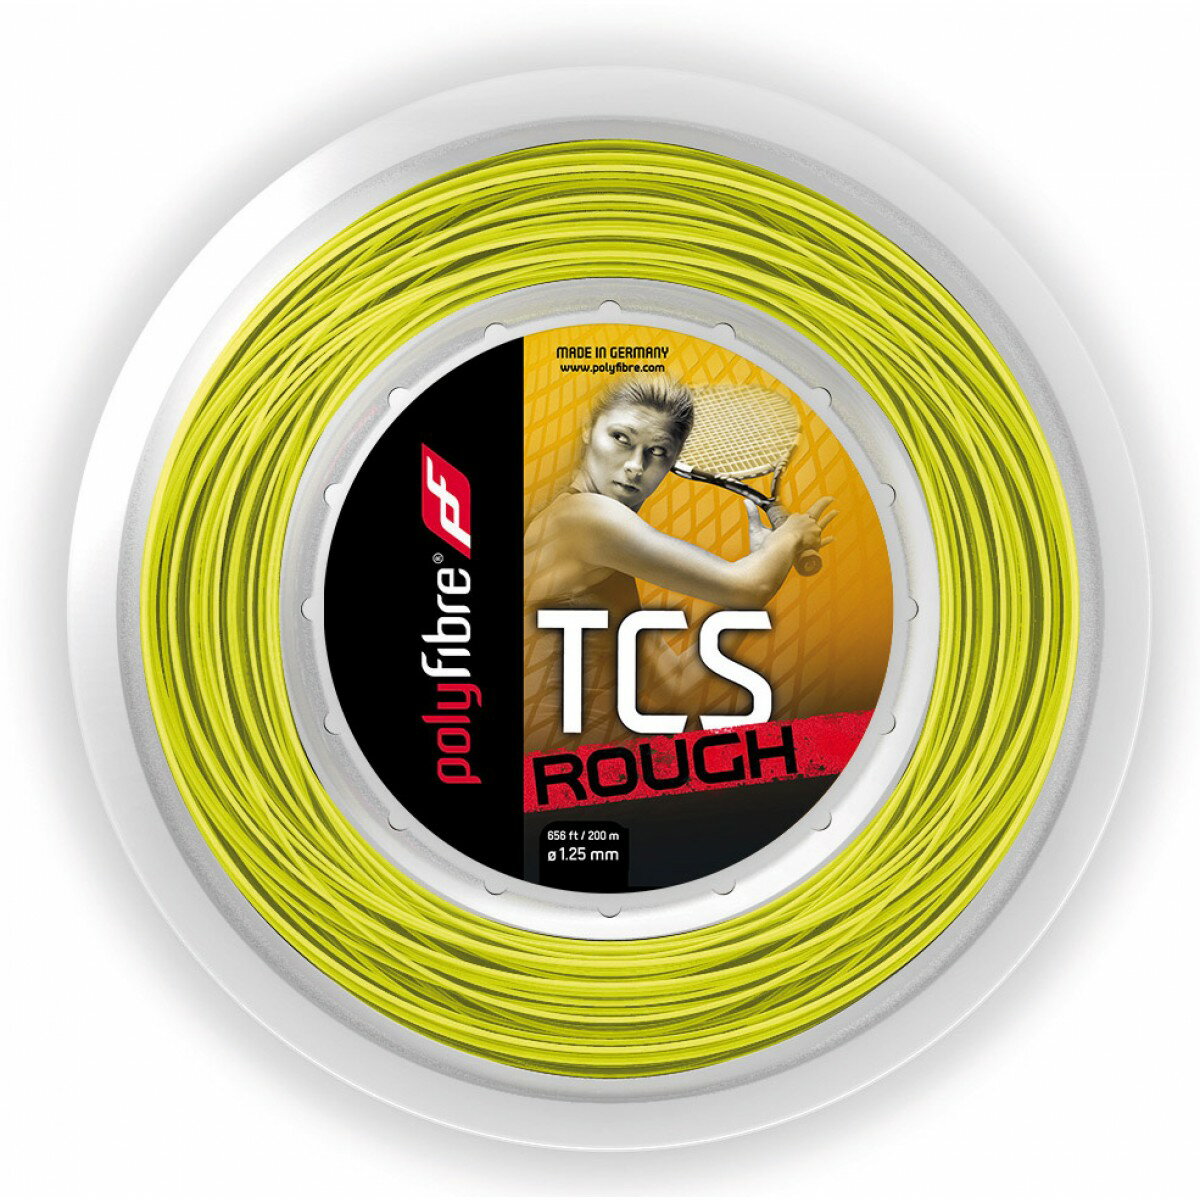 ポリファイバー TCSラフ (1.25/1.30mm) 200Mロール 硬式テニス ポリエステル ガット Polyfibre TCS ROUGH (1.25/1.30) 200m roll strings